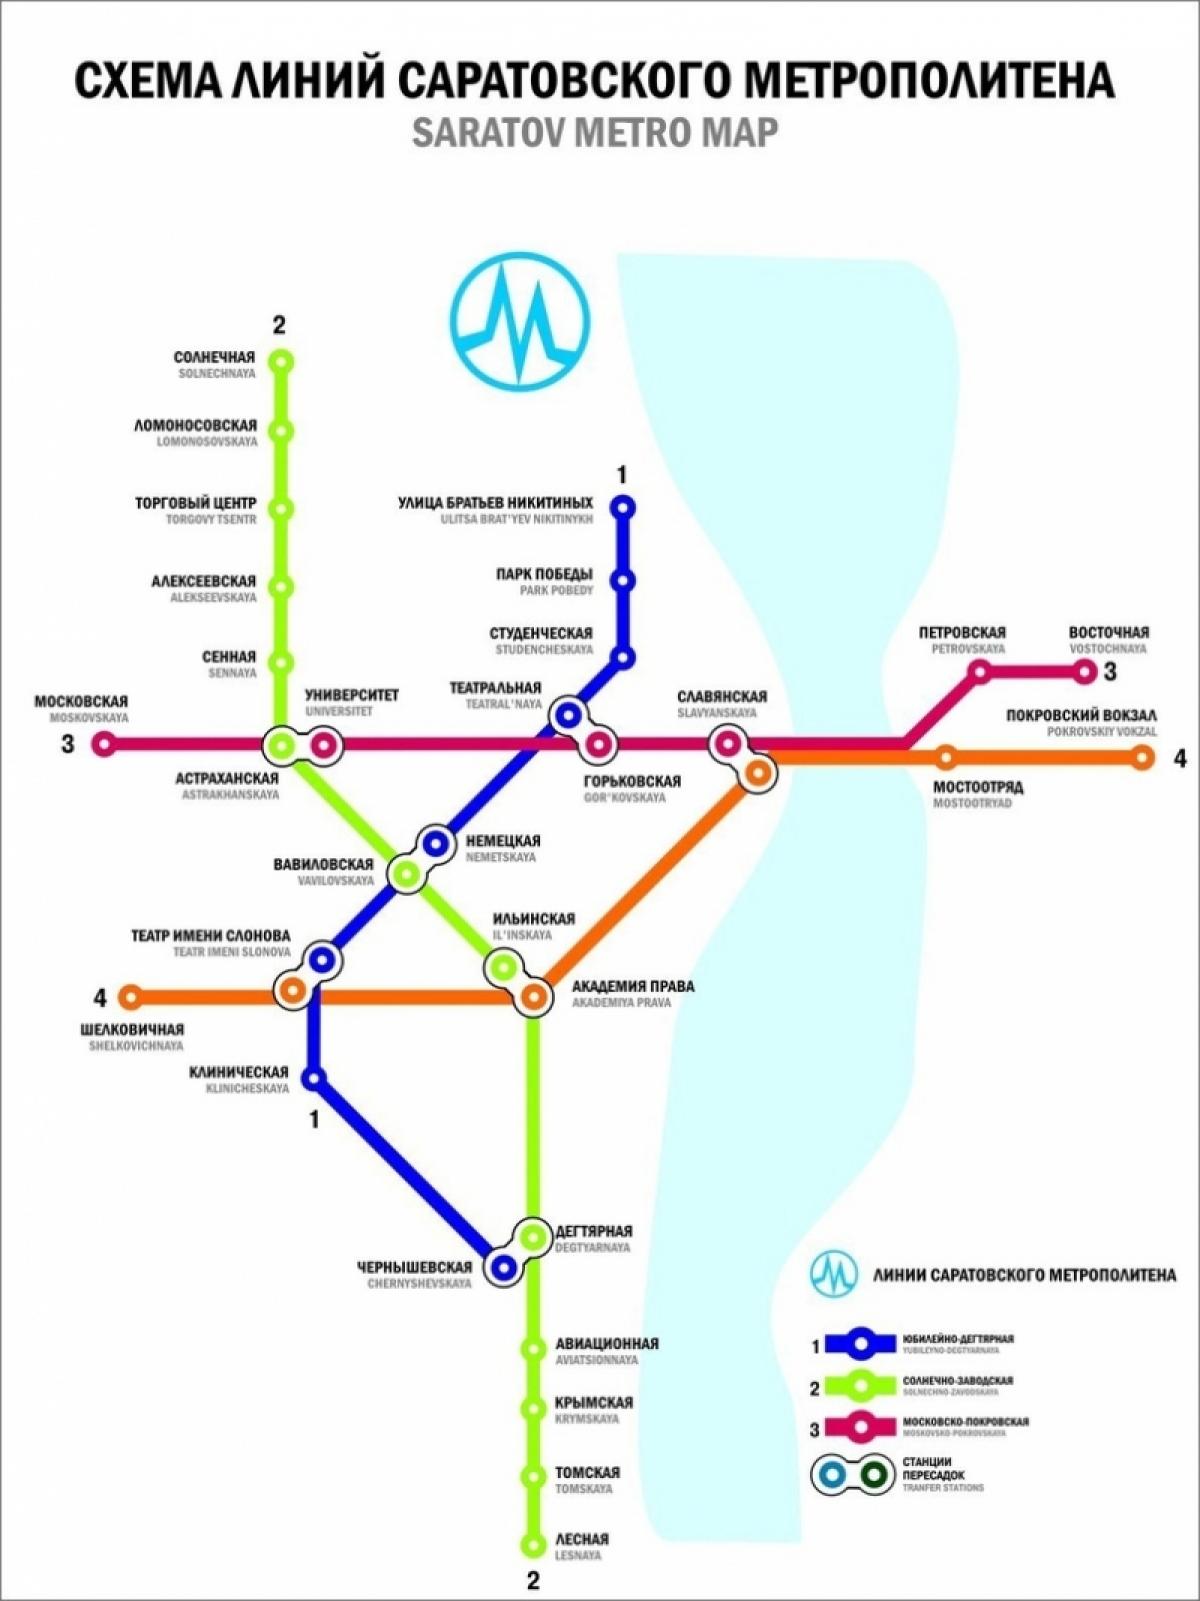 Саратовцы и покровчане отреагировали на схему общего городского метро